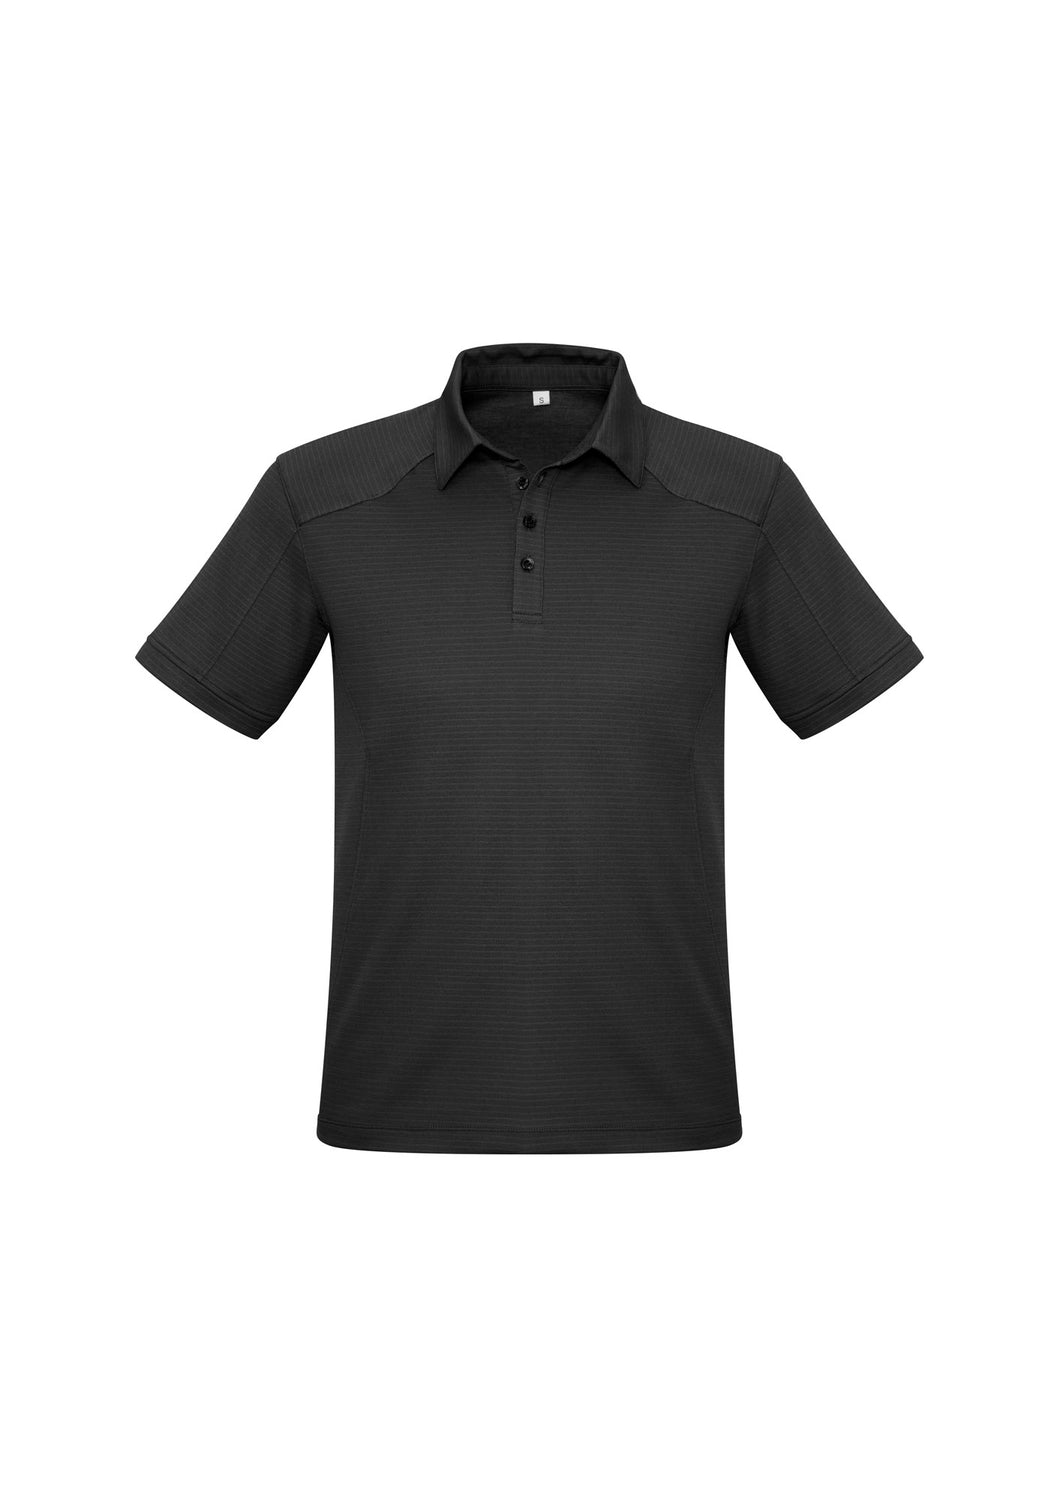 Men's Cotton-Rich Comfort Polo - Black